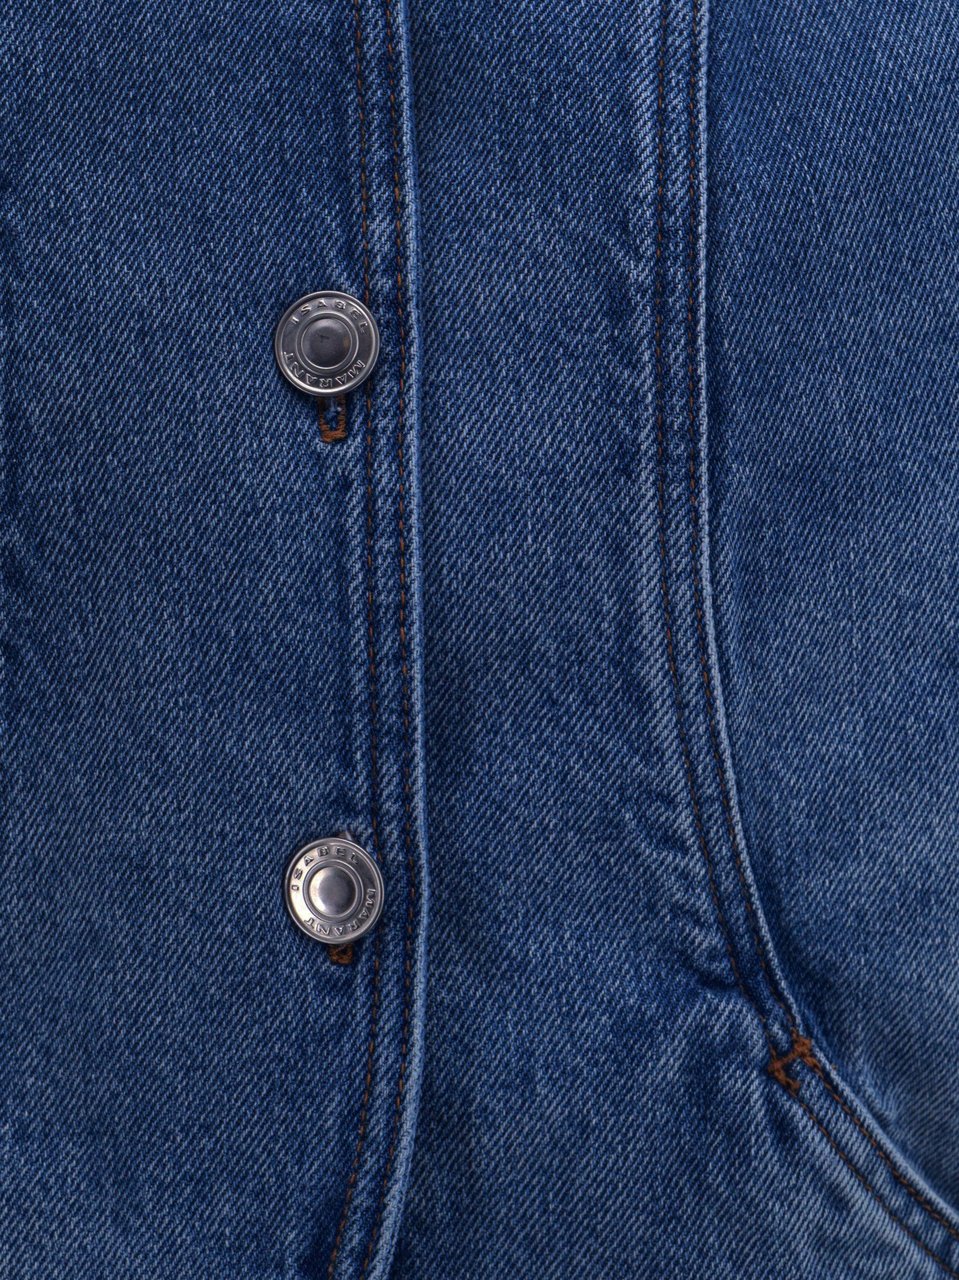 Isabel Marant Denim jacket with rounded profile Blauw